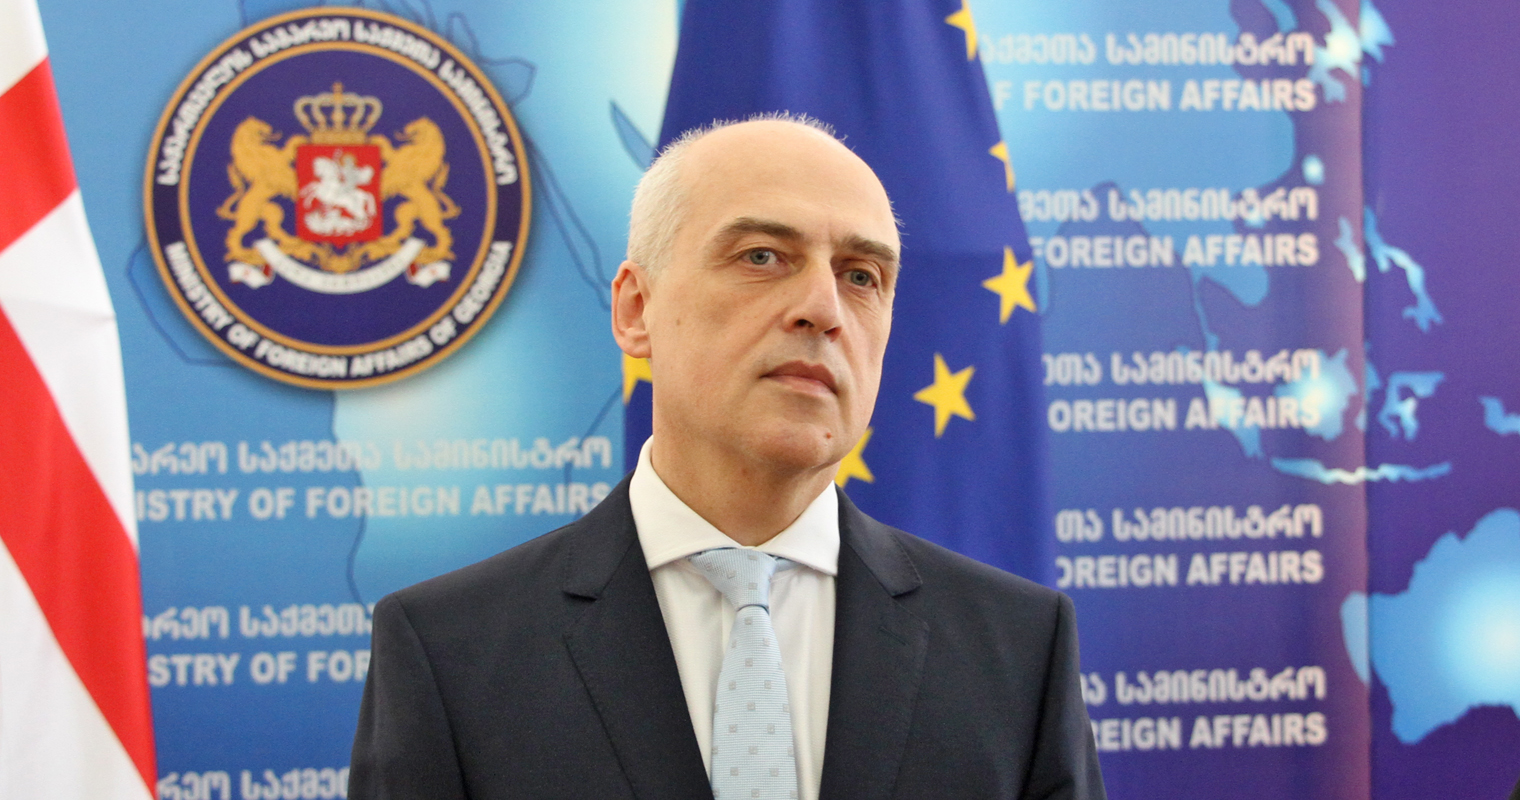 МИД Грузии: Интеграция Грузии в НАТО принесет стабильность региону 